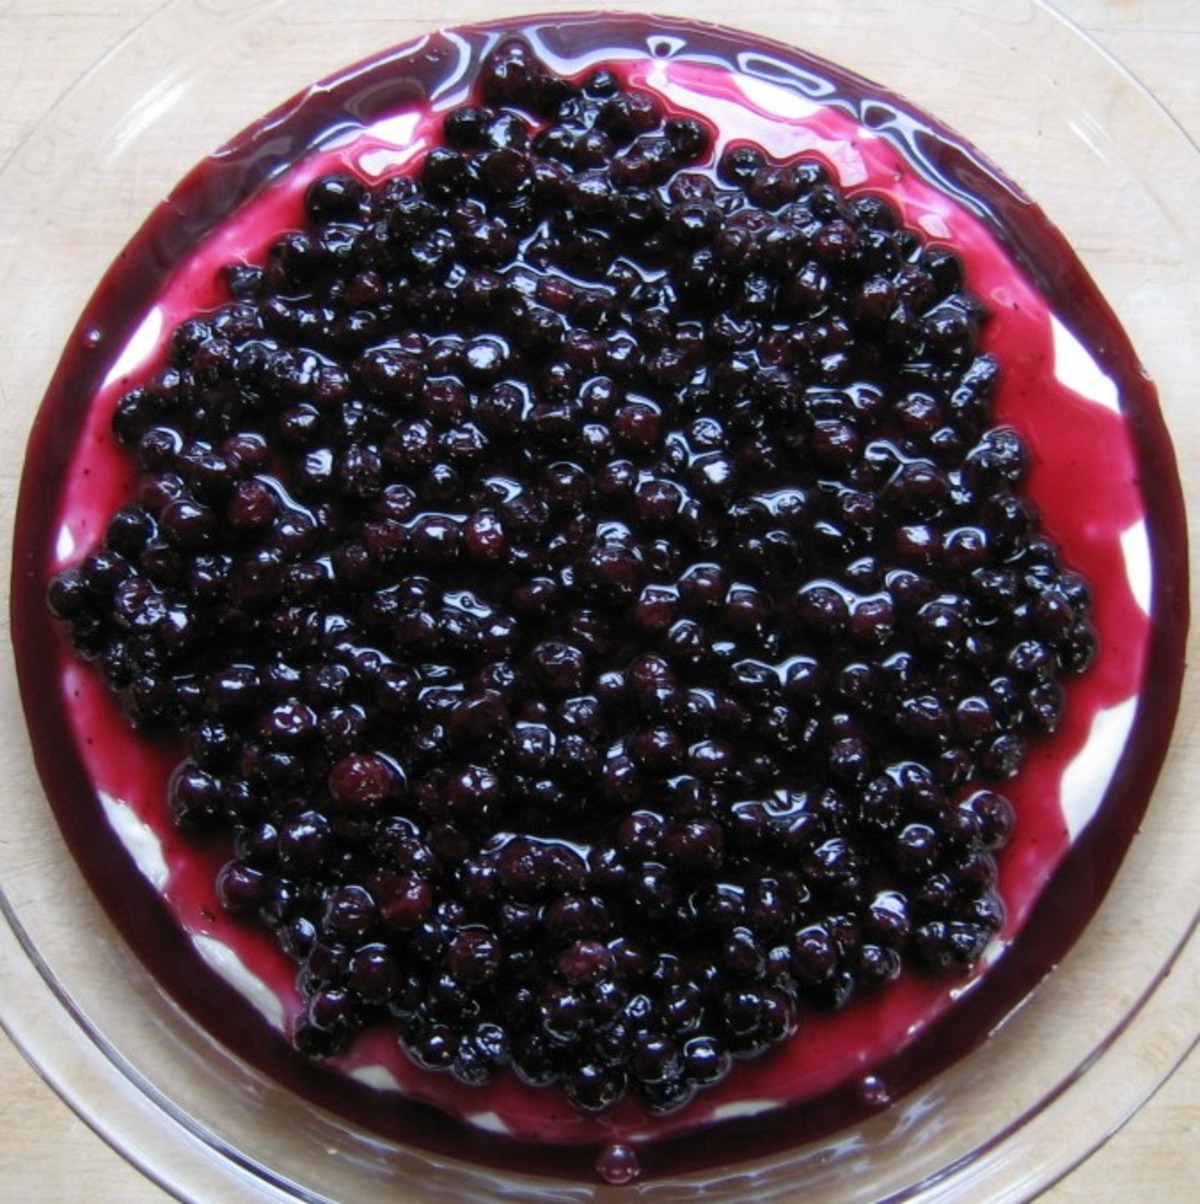 Responder @paolamarques34 já provou pizza de cheesecake de blueberry?